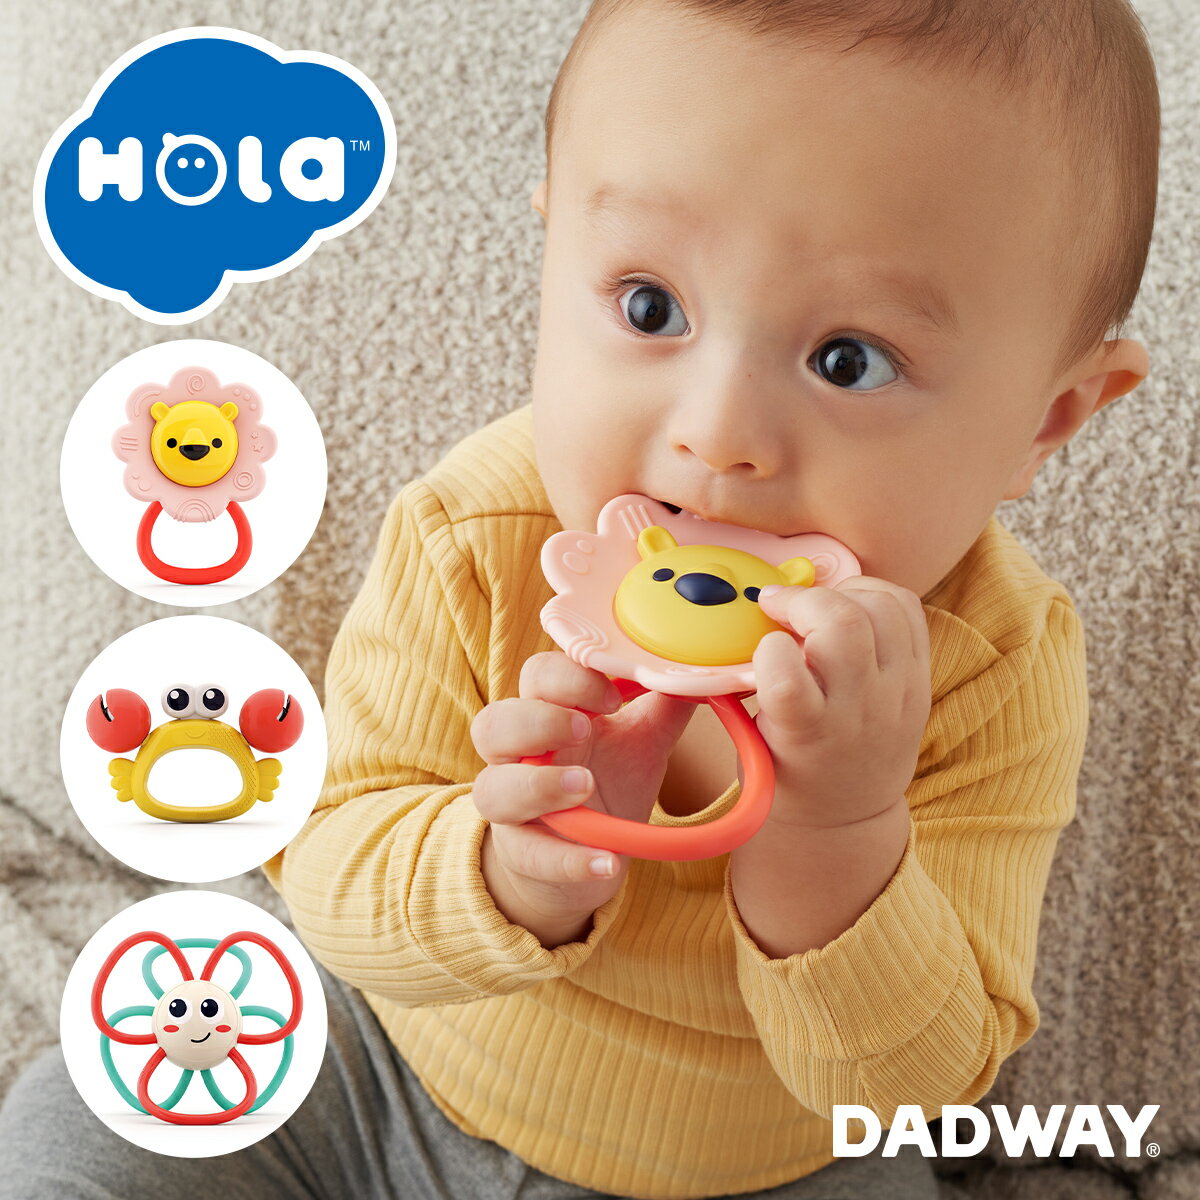 HolaToys オラトイズ 3カ月からのにぎりんぐ | クリスマス プレゼント ギフト おもちゃ 赤ちゃん